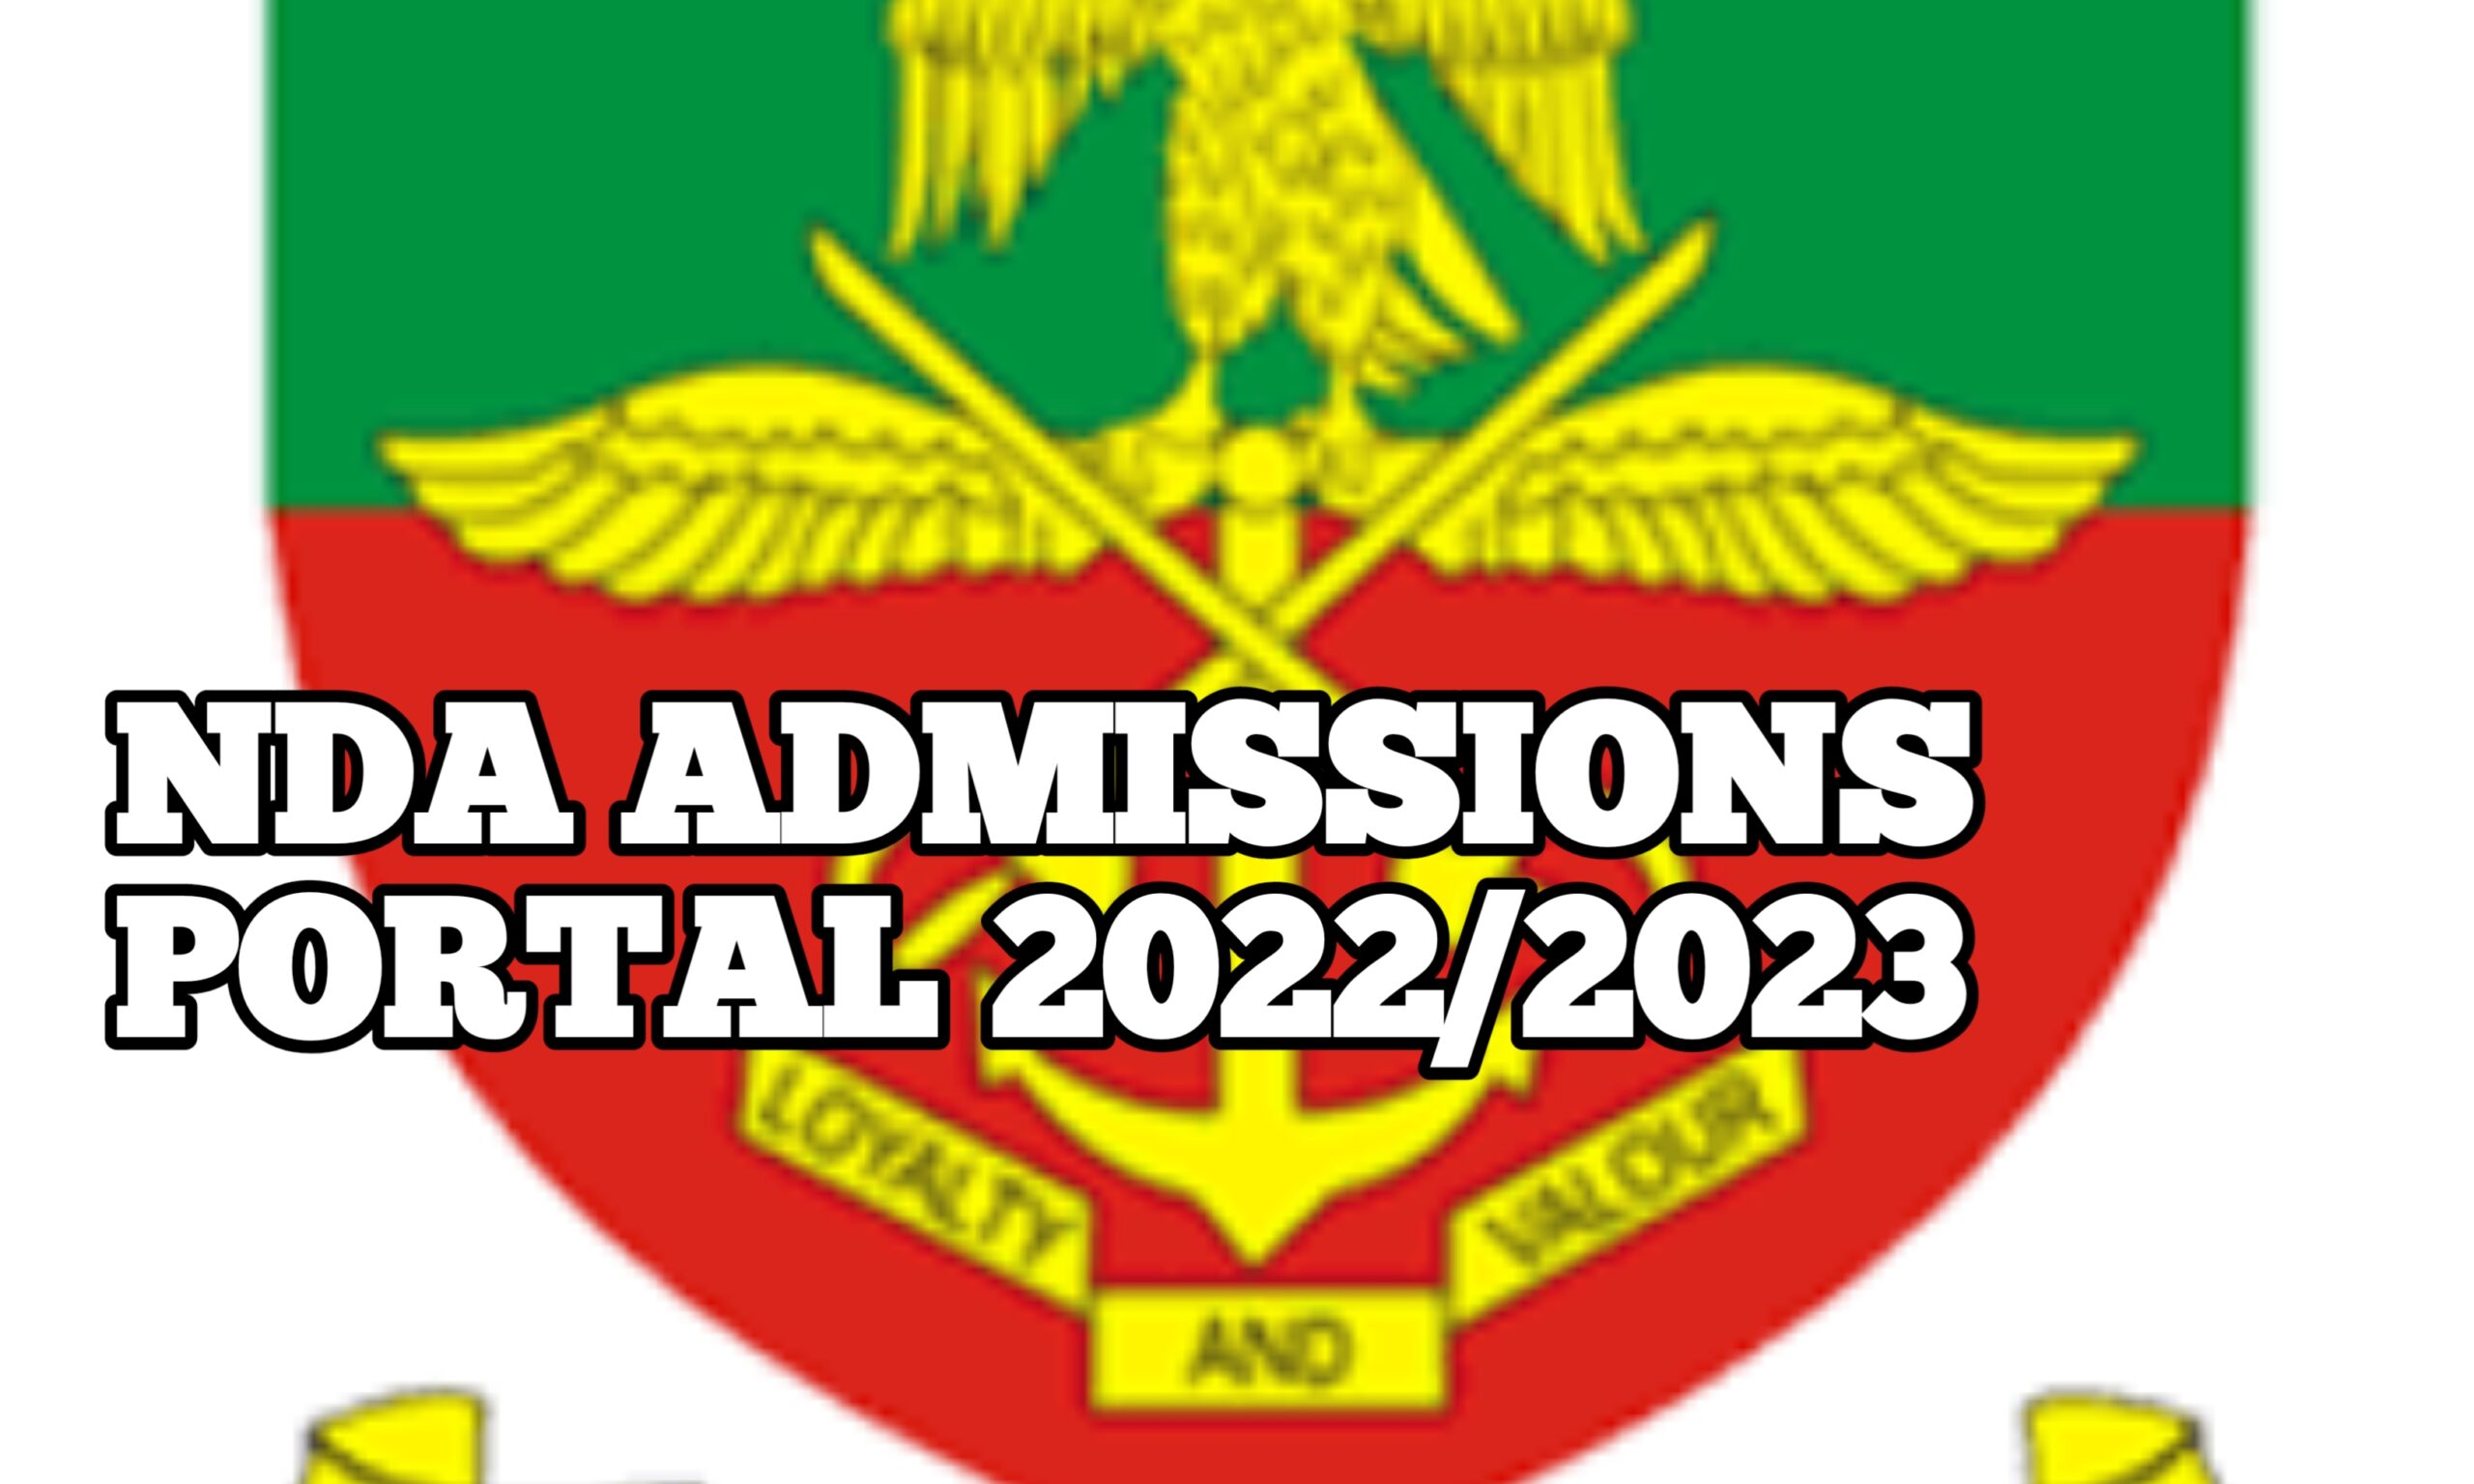 Nigeria Defense Academy (NDA) Portal For Admission www.nda.edu.ng